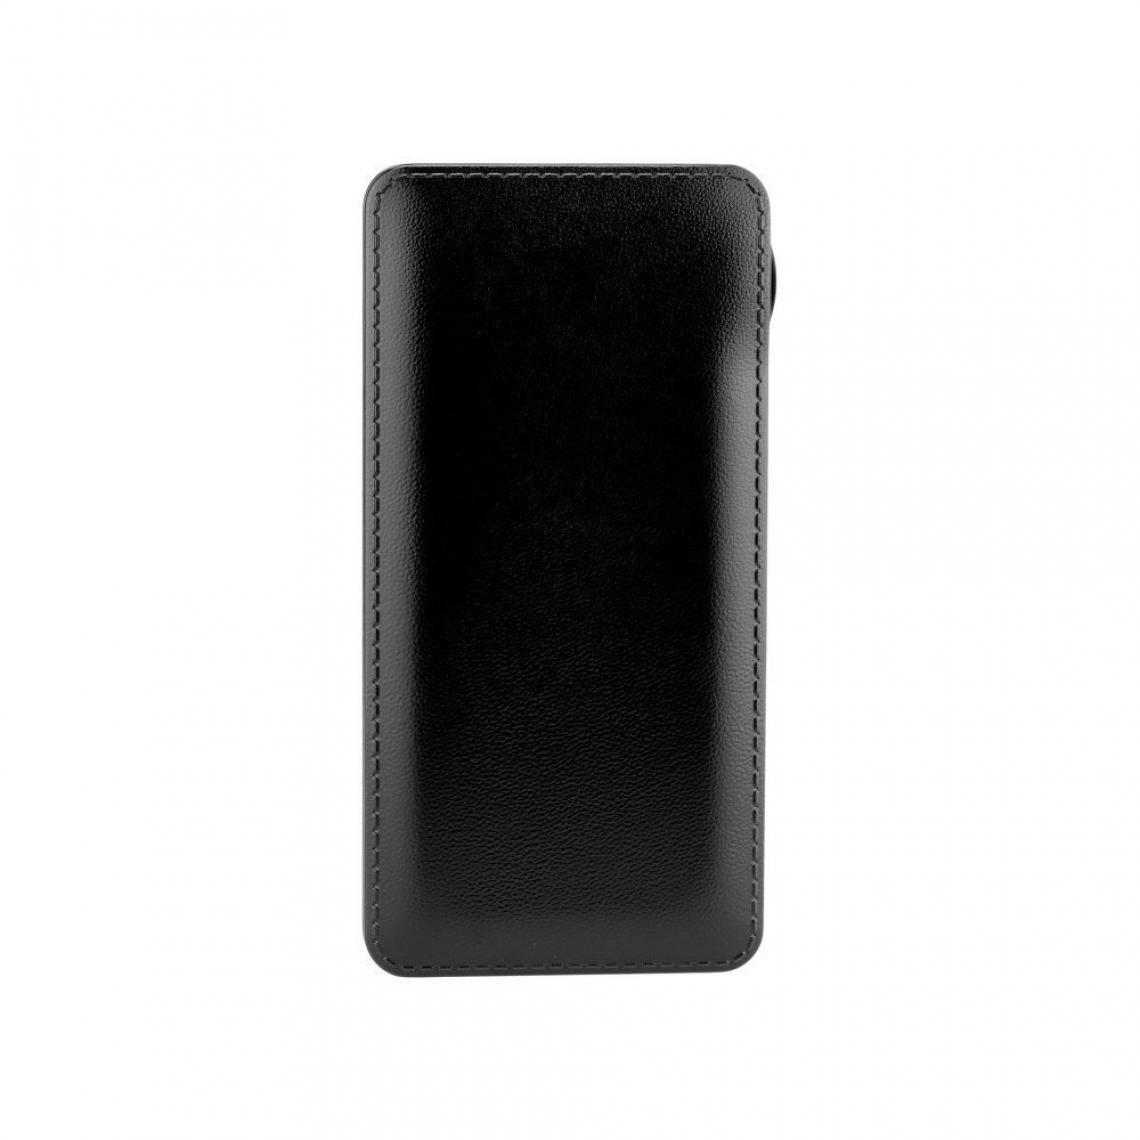 Ozzzo - Chargeur batterie externe 30000 mAh powerbank ozzzo noir pour Apple iPad Pro 10.5 - Autres accessoires smartphone